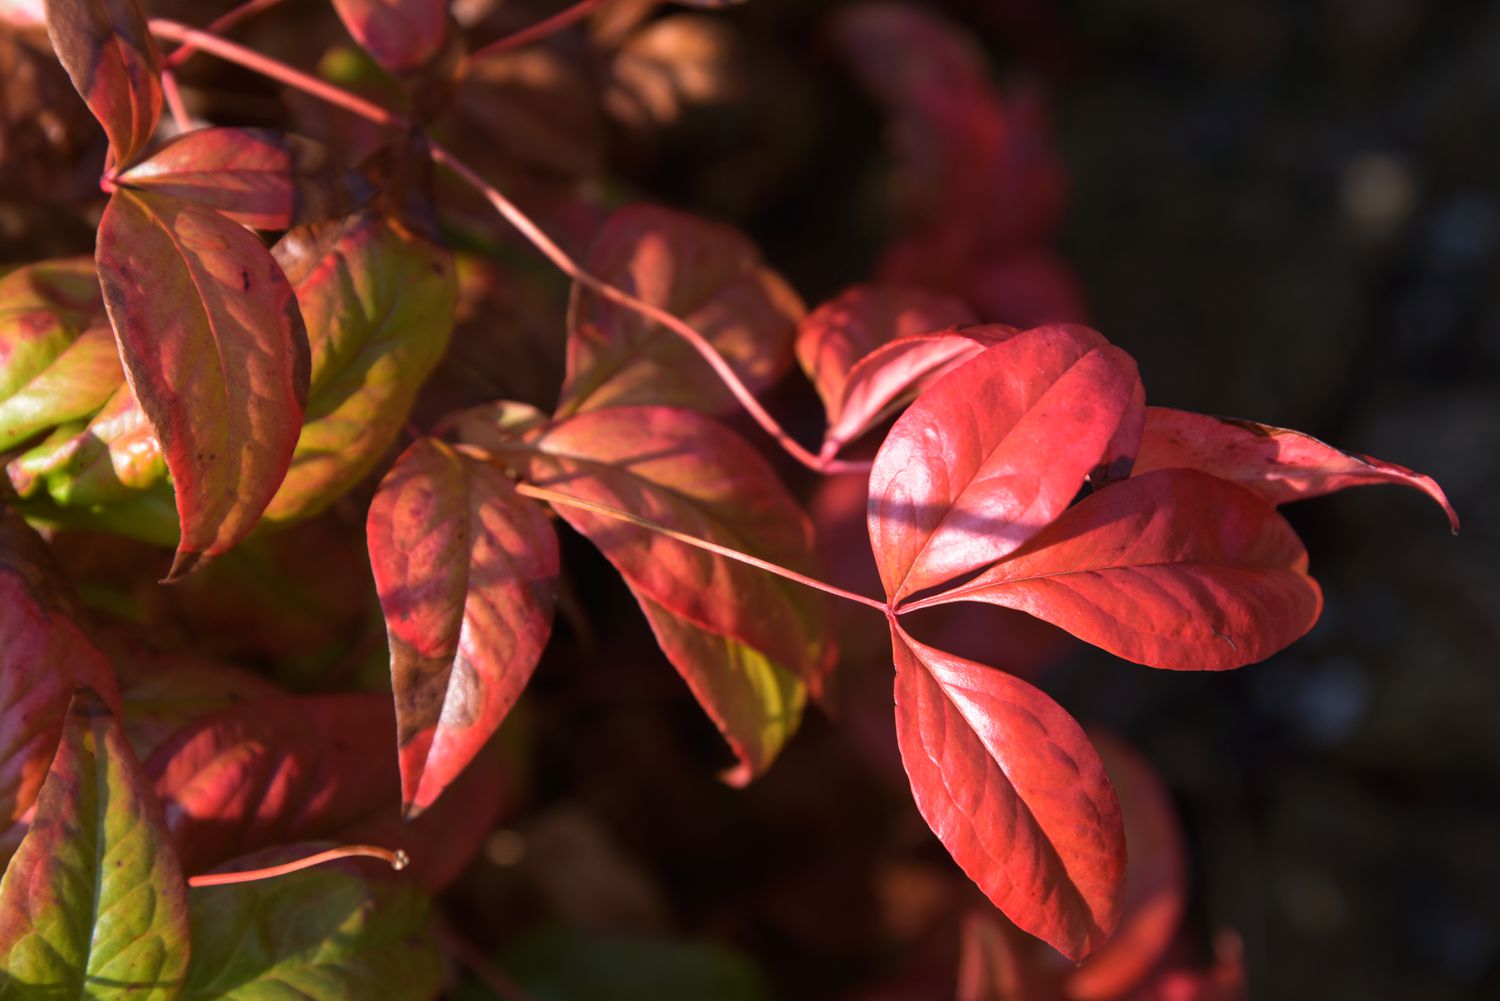 Firepower Nandina mit roten Blättern im Sonnenlicht in Nahaufnahme